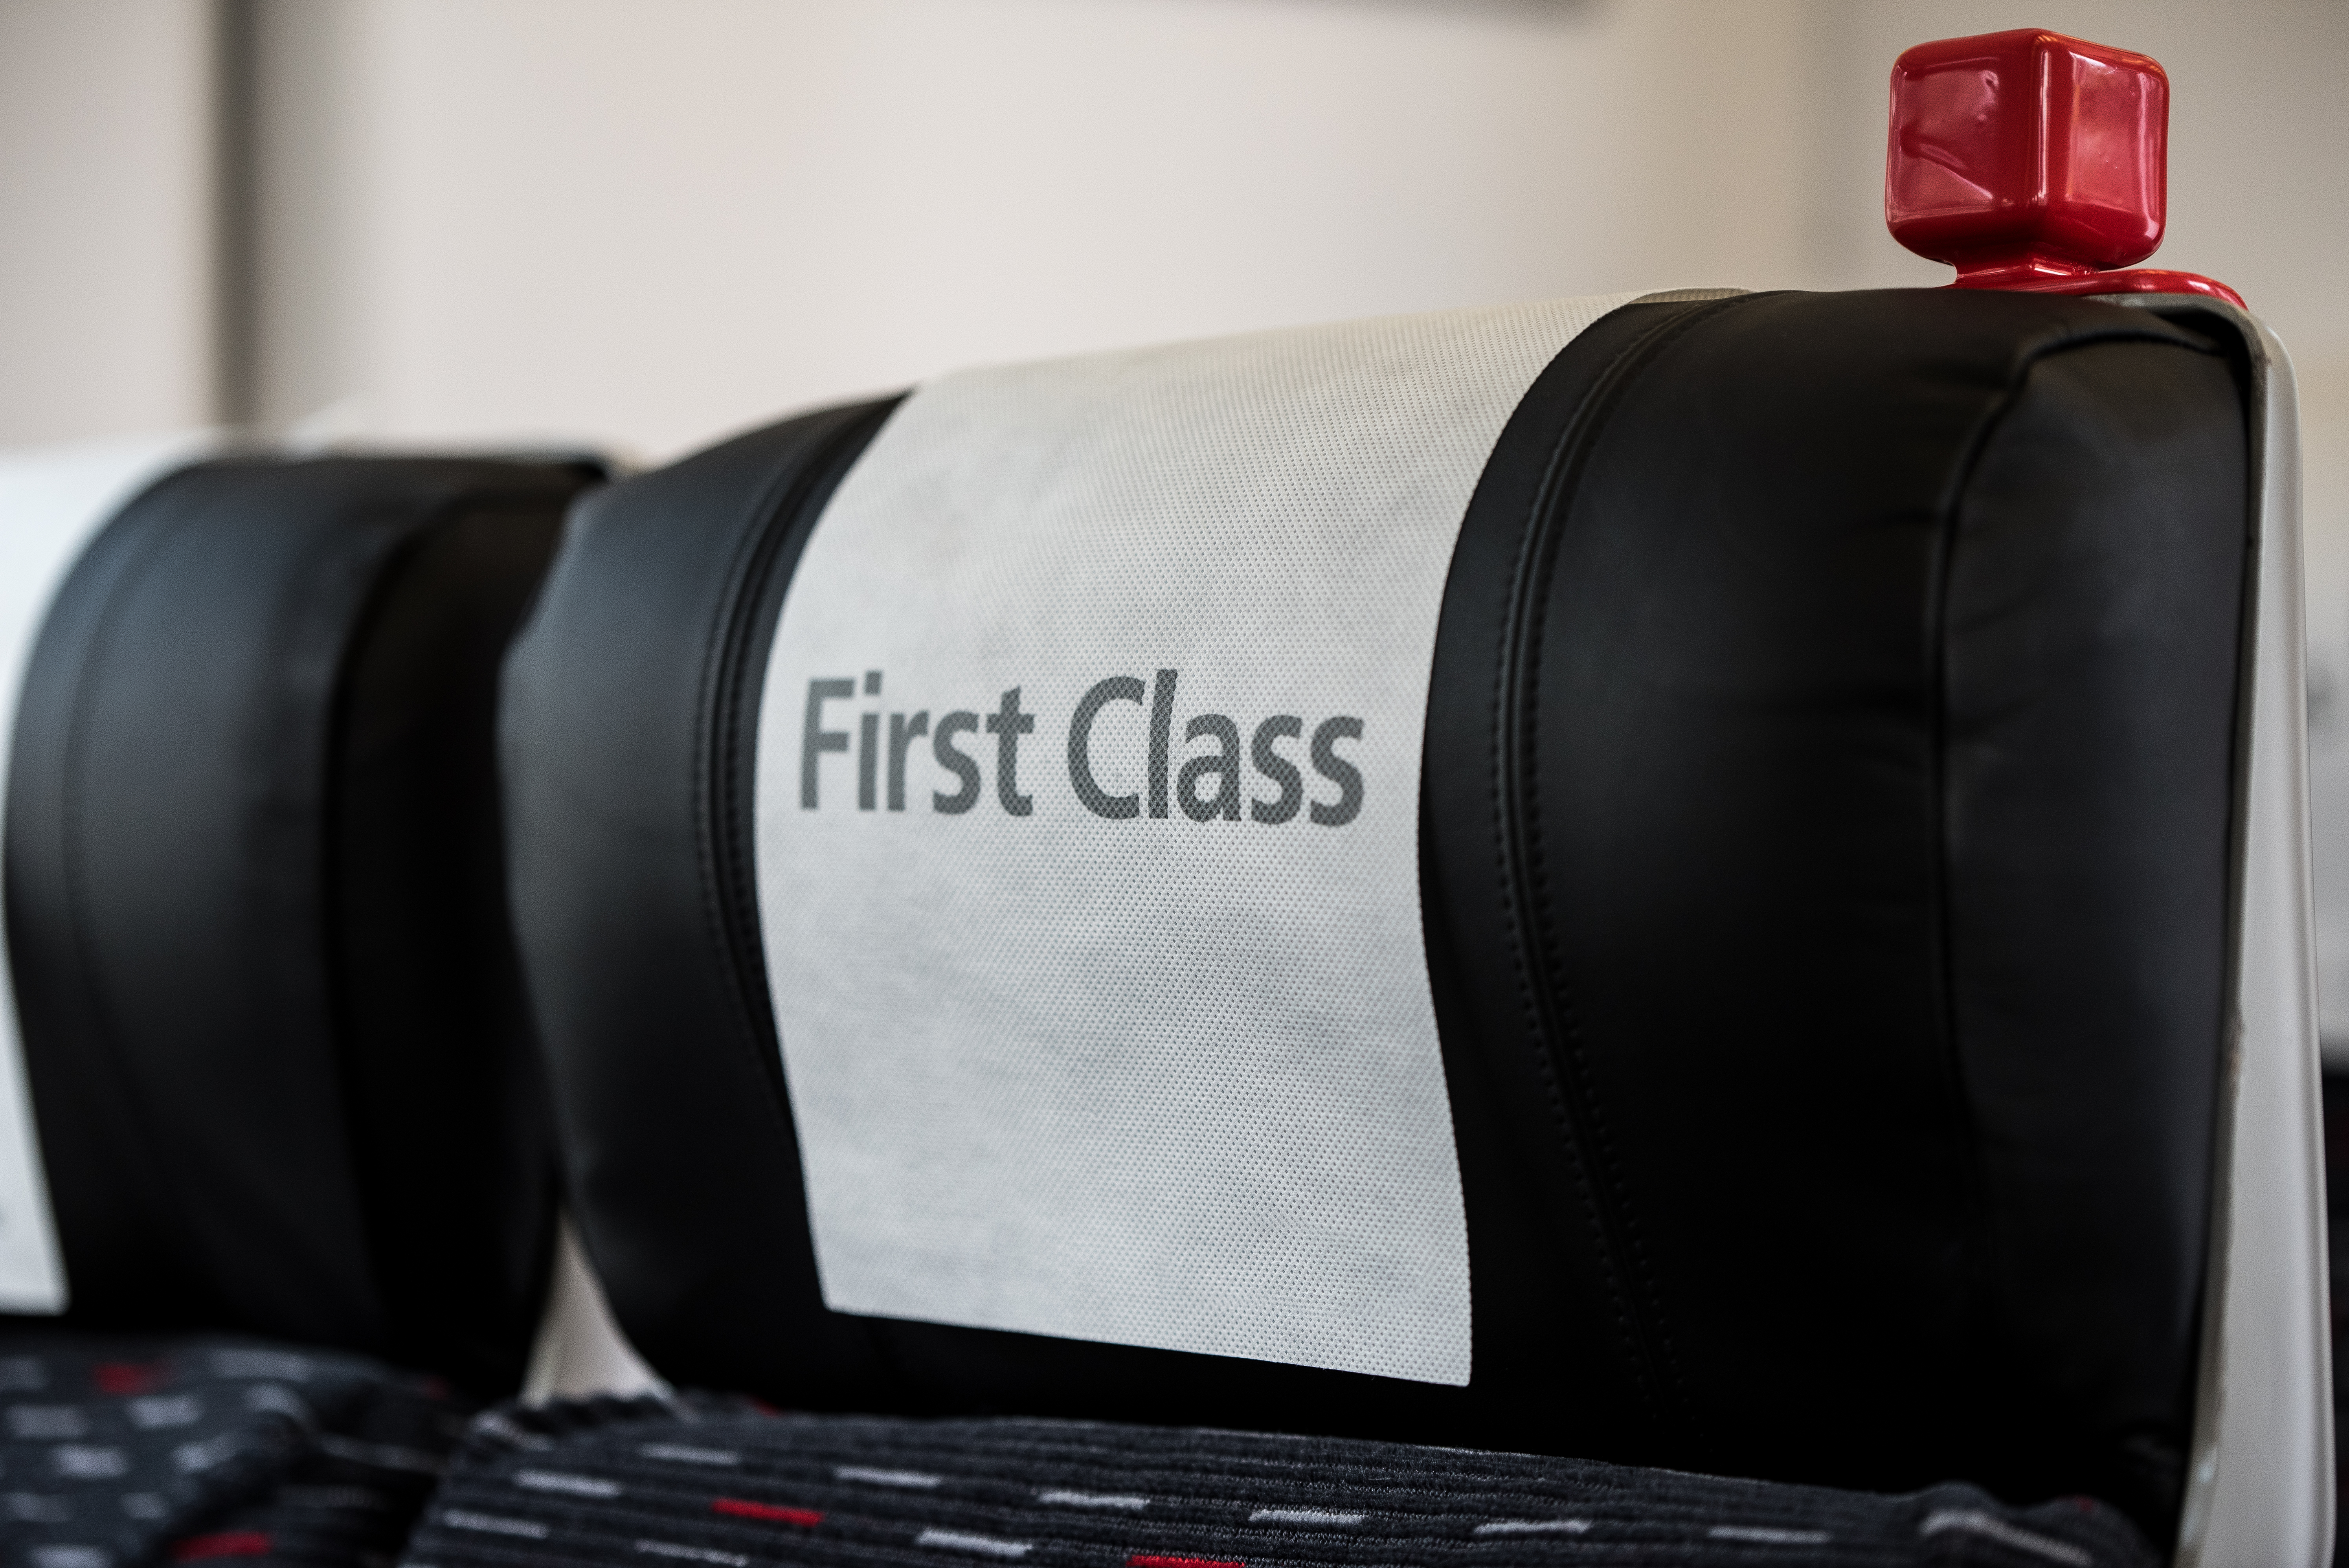 Asiento de tren con un cartel que dice "Primera Clase" | Foto: Shutterstock